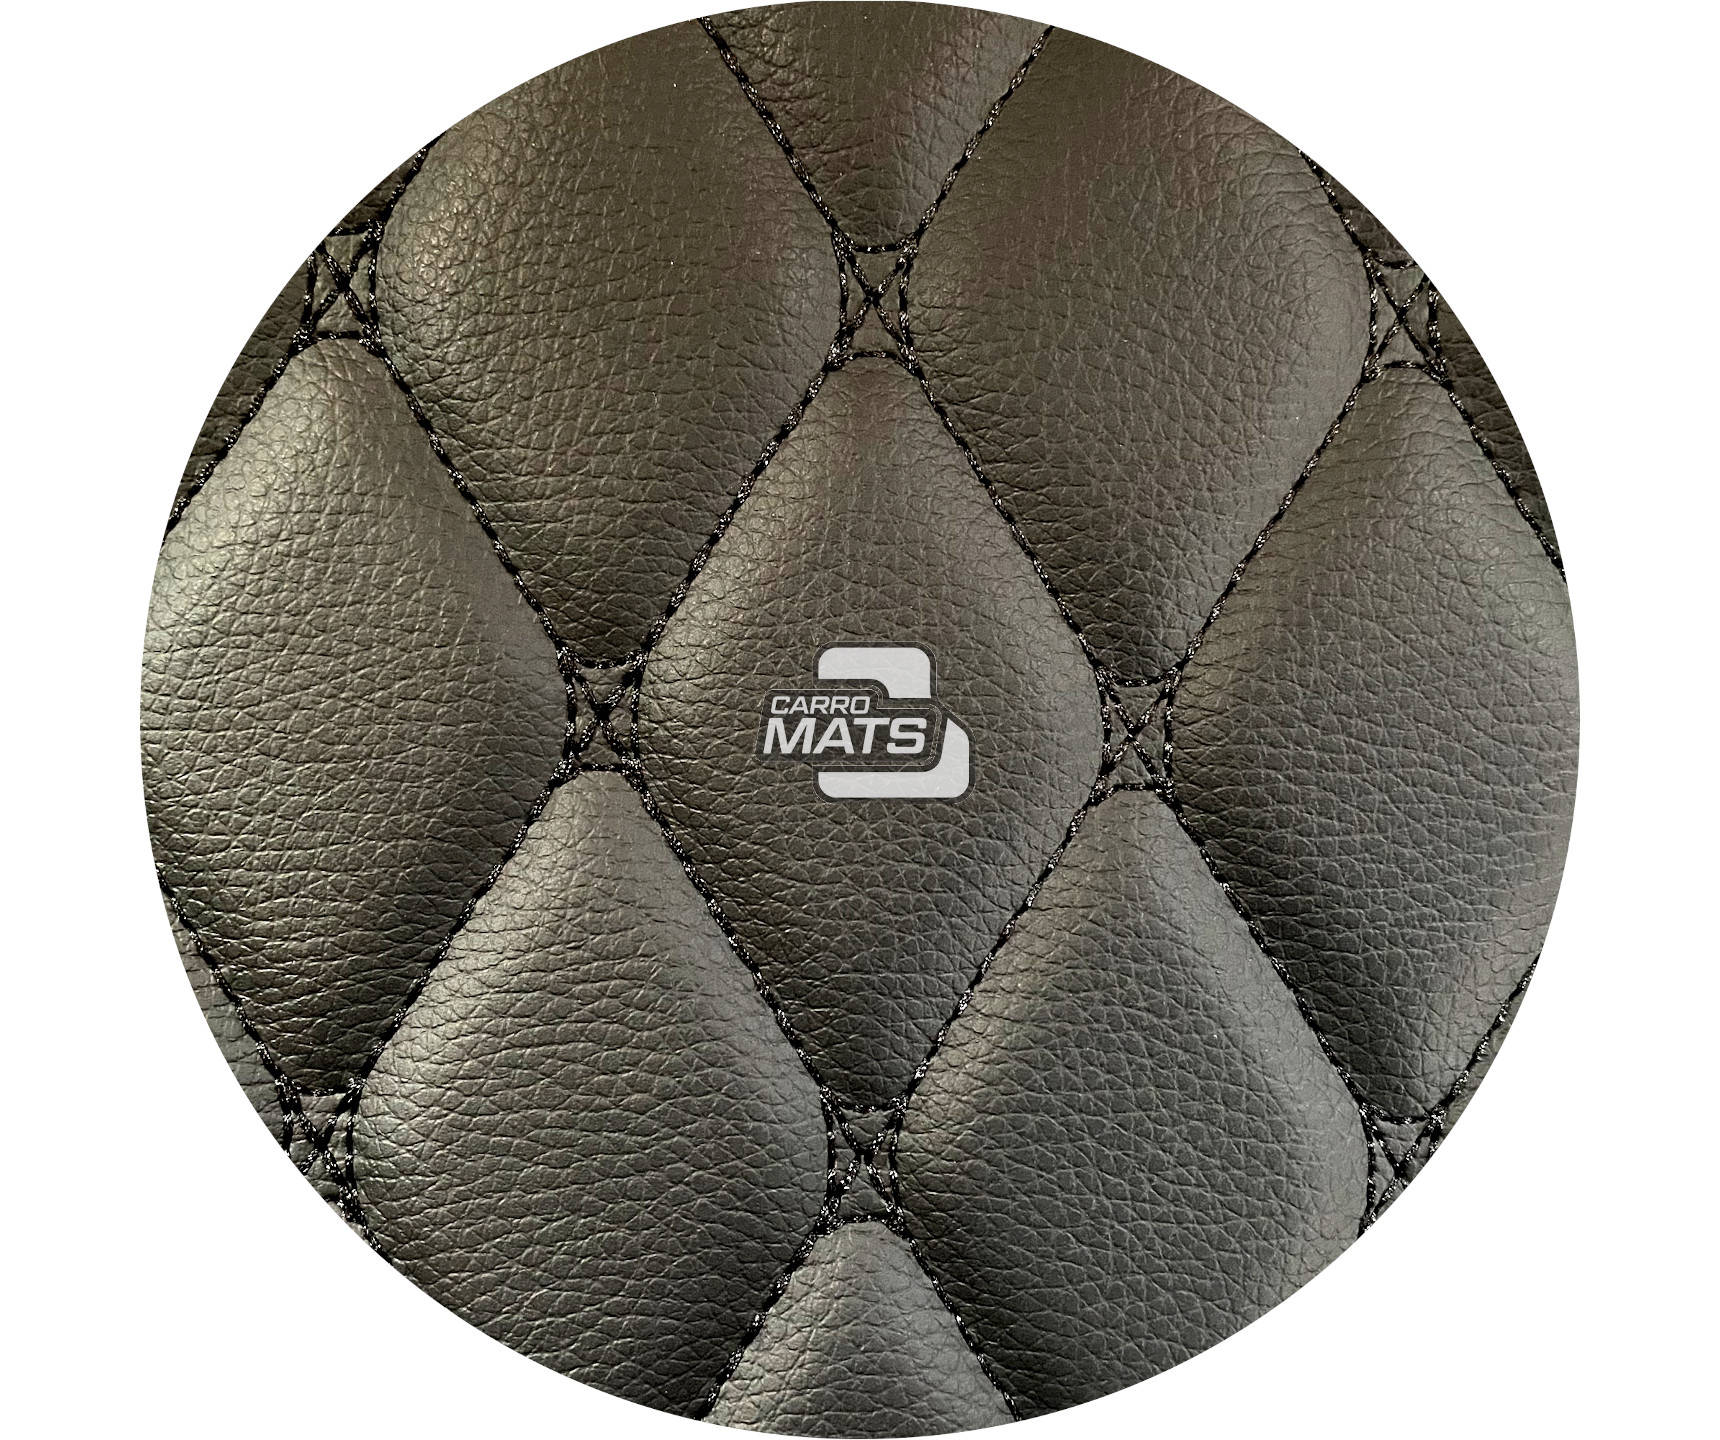 Diamond Custom Floor Mats for Nissan Sentra (2014-2019)